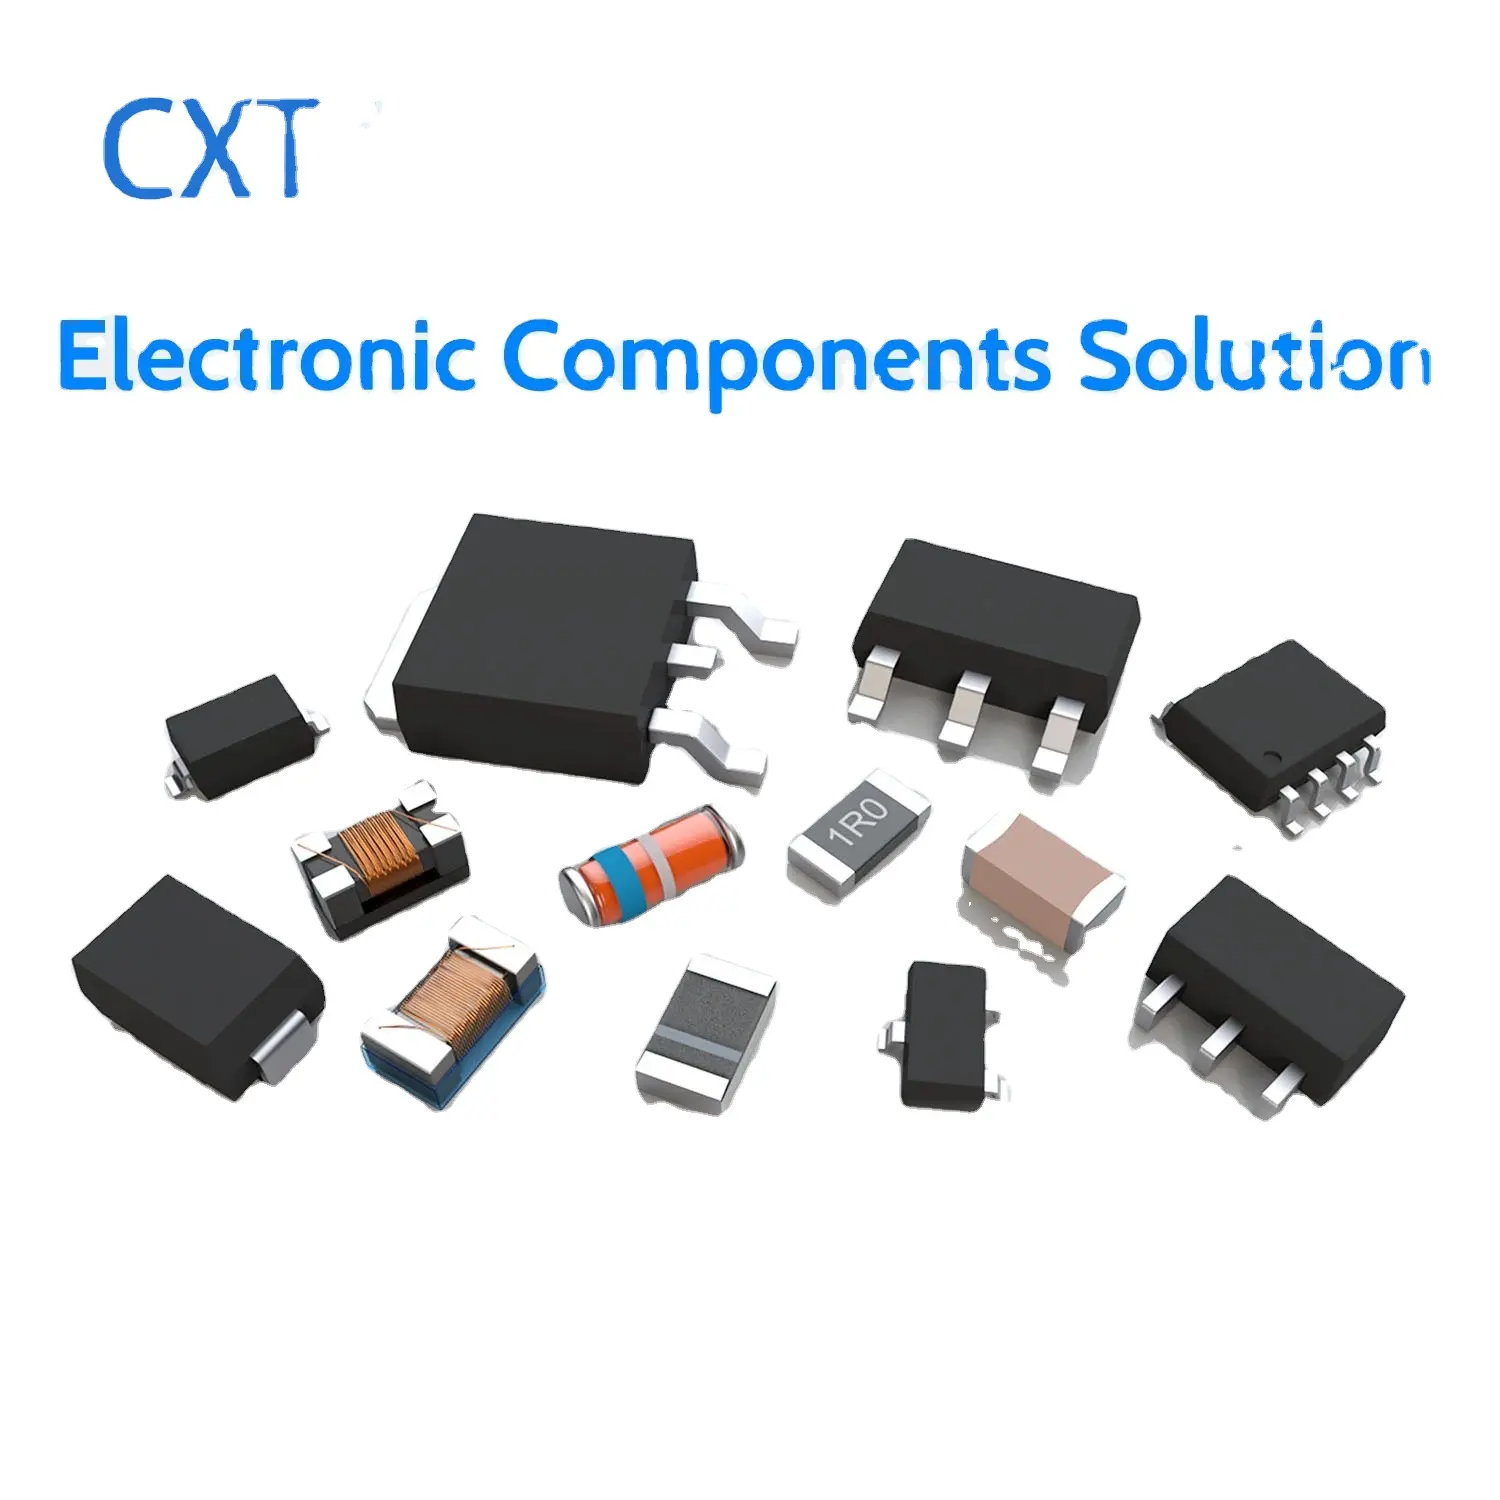 Stokta yeni ve orijinal elektronik bileşenler entegre devre elektronik parçalar Ic çip bileşenleri tedarikçisi bom servisi